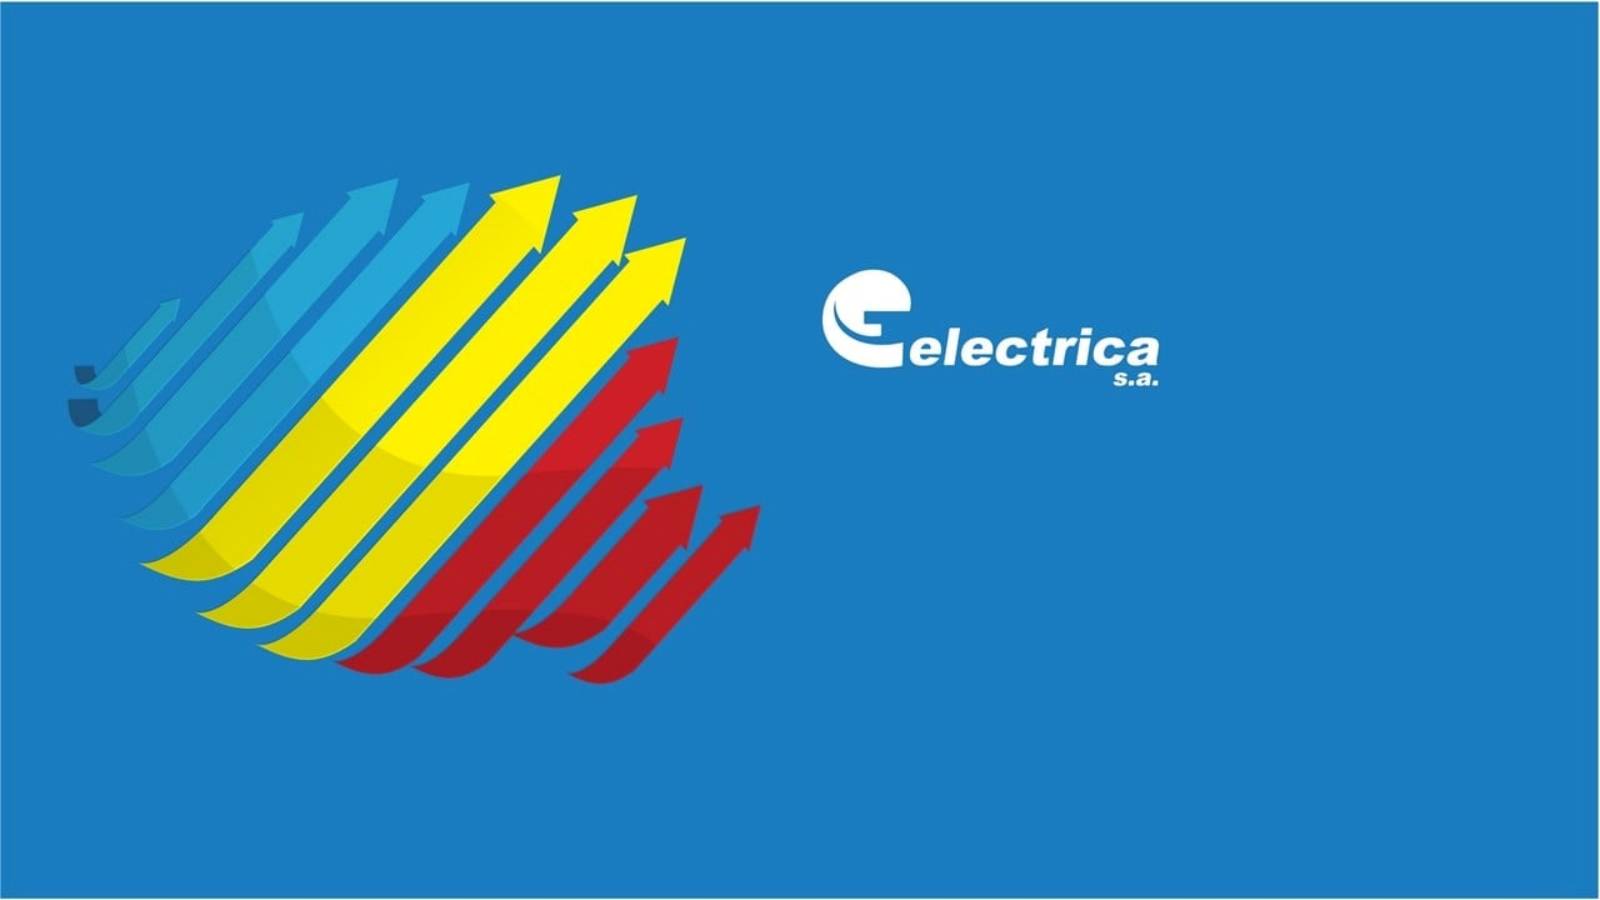 Electrica Informari Oficiale ULTIM MOMENT Clientii Romani Vizati Masuri Importante